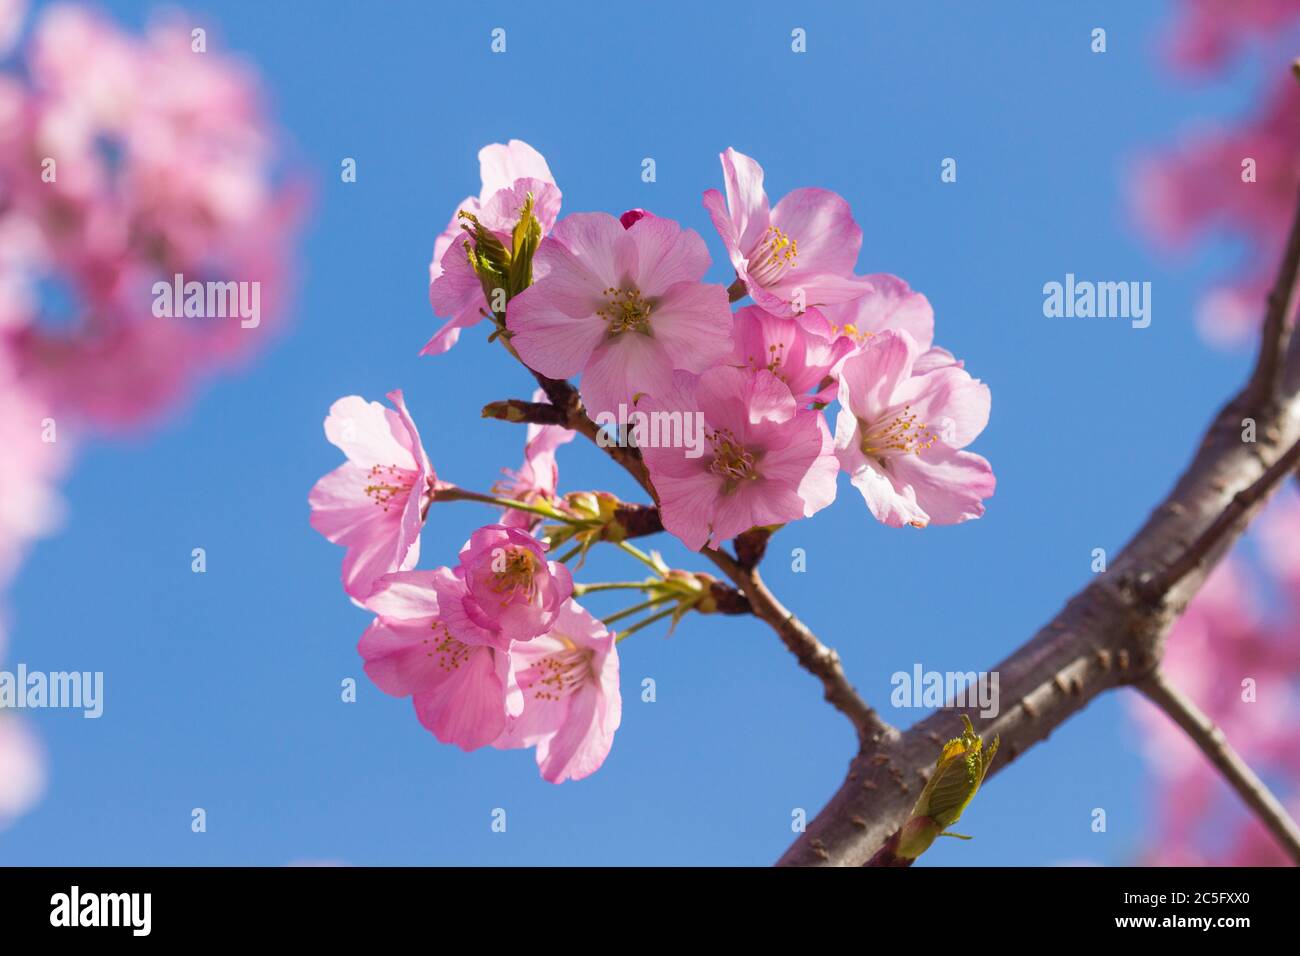 Macro / gros plan des cerisiers en fleurs japonais roses / sakura rose / Prunus serrulata contre un ciel bleu, Washington, D.C., États-Unis Banque D'Images